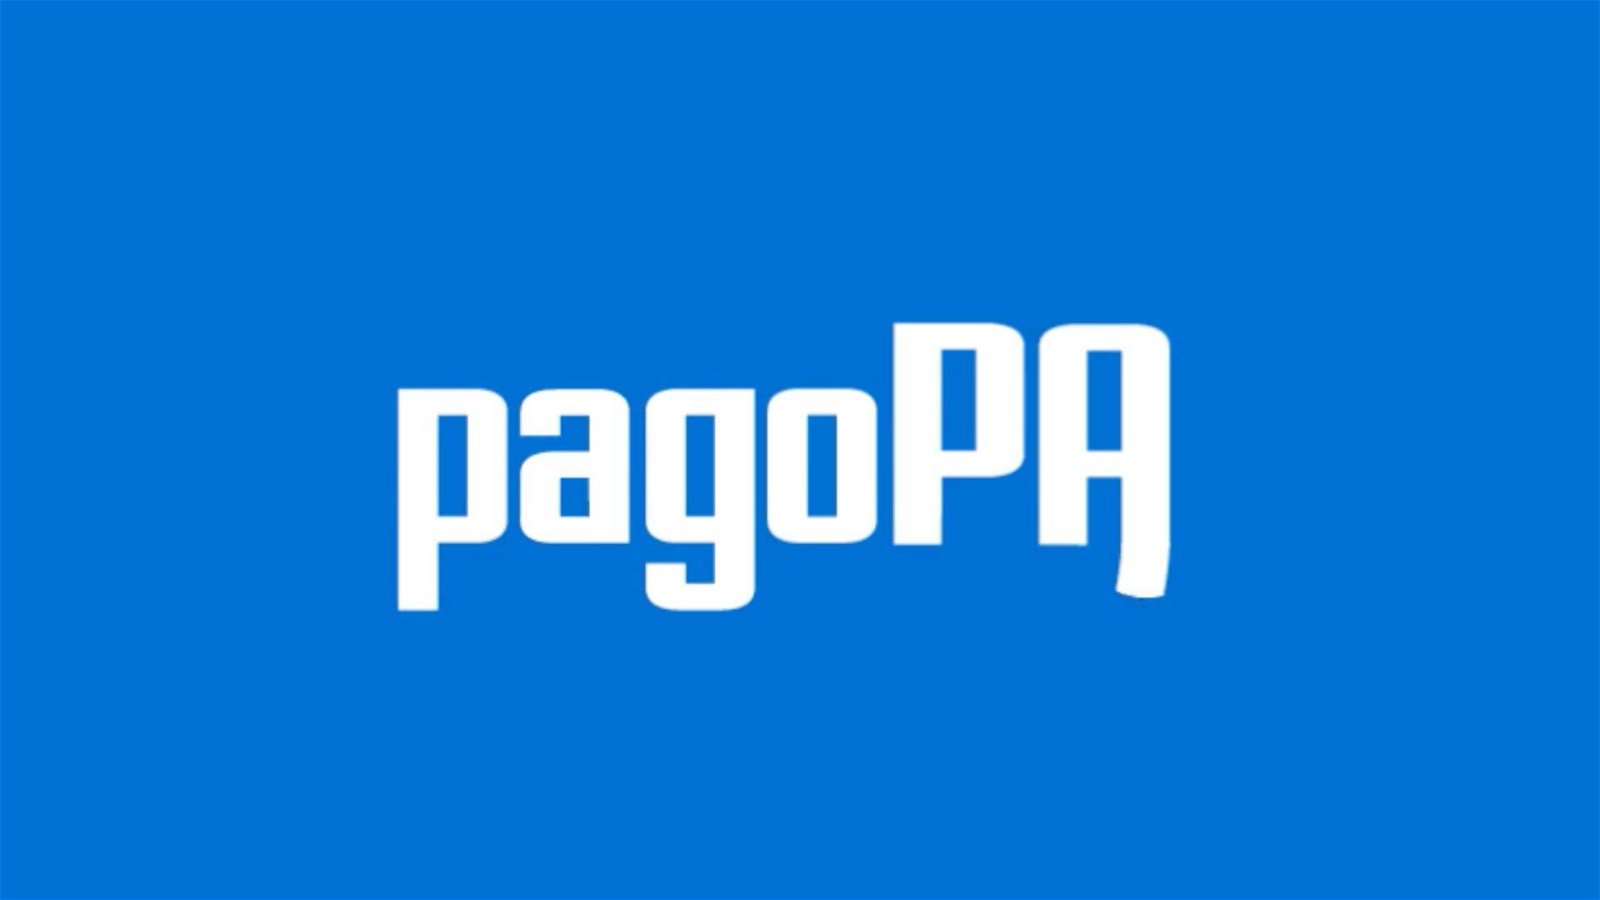 Immagine di pagoPa è diventata una società per azioni partecipata interamente dallo Stato